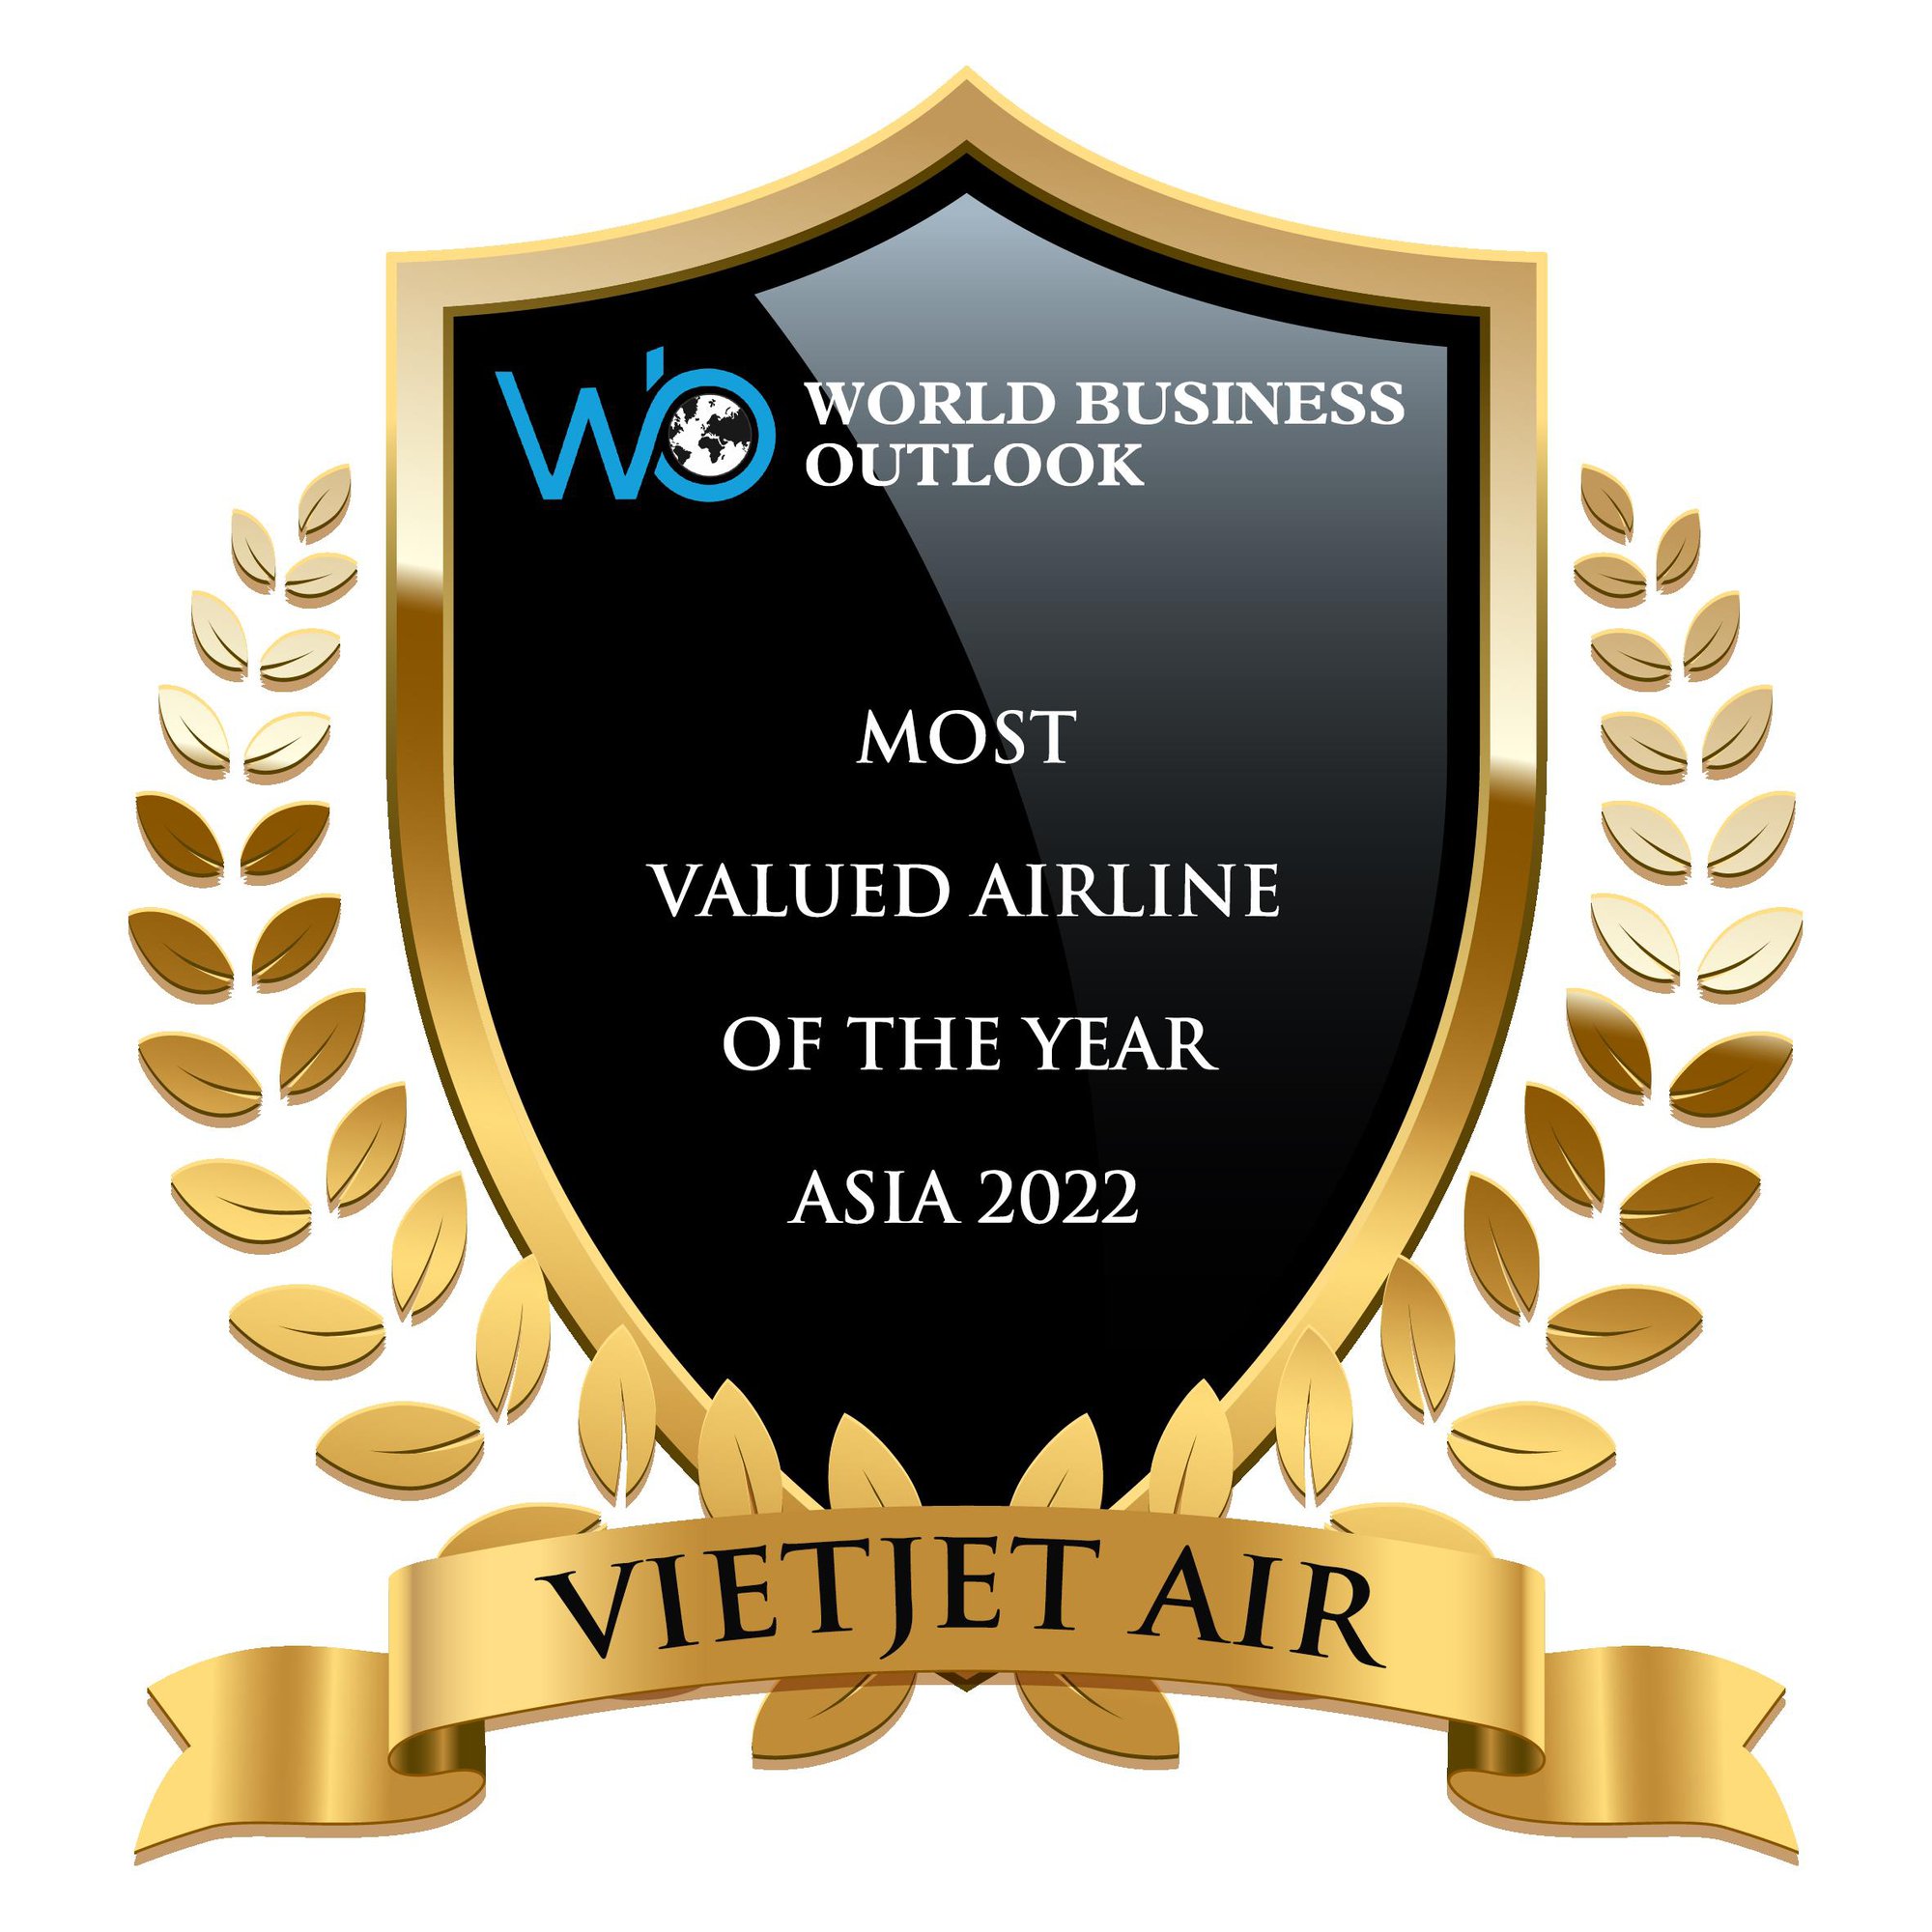 Vietjet đoạt 3 giải thưởng quốc tế uy tín của Skytrax và World Business Outlook - Ảnh 1.